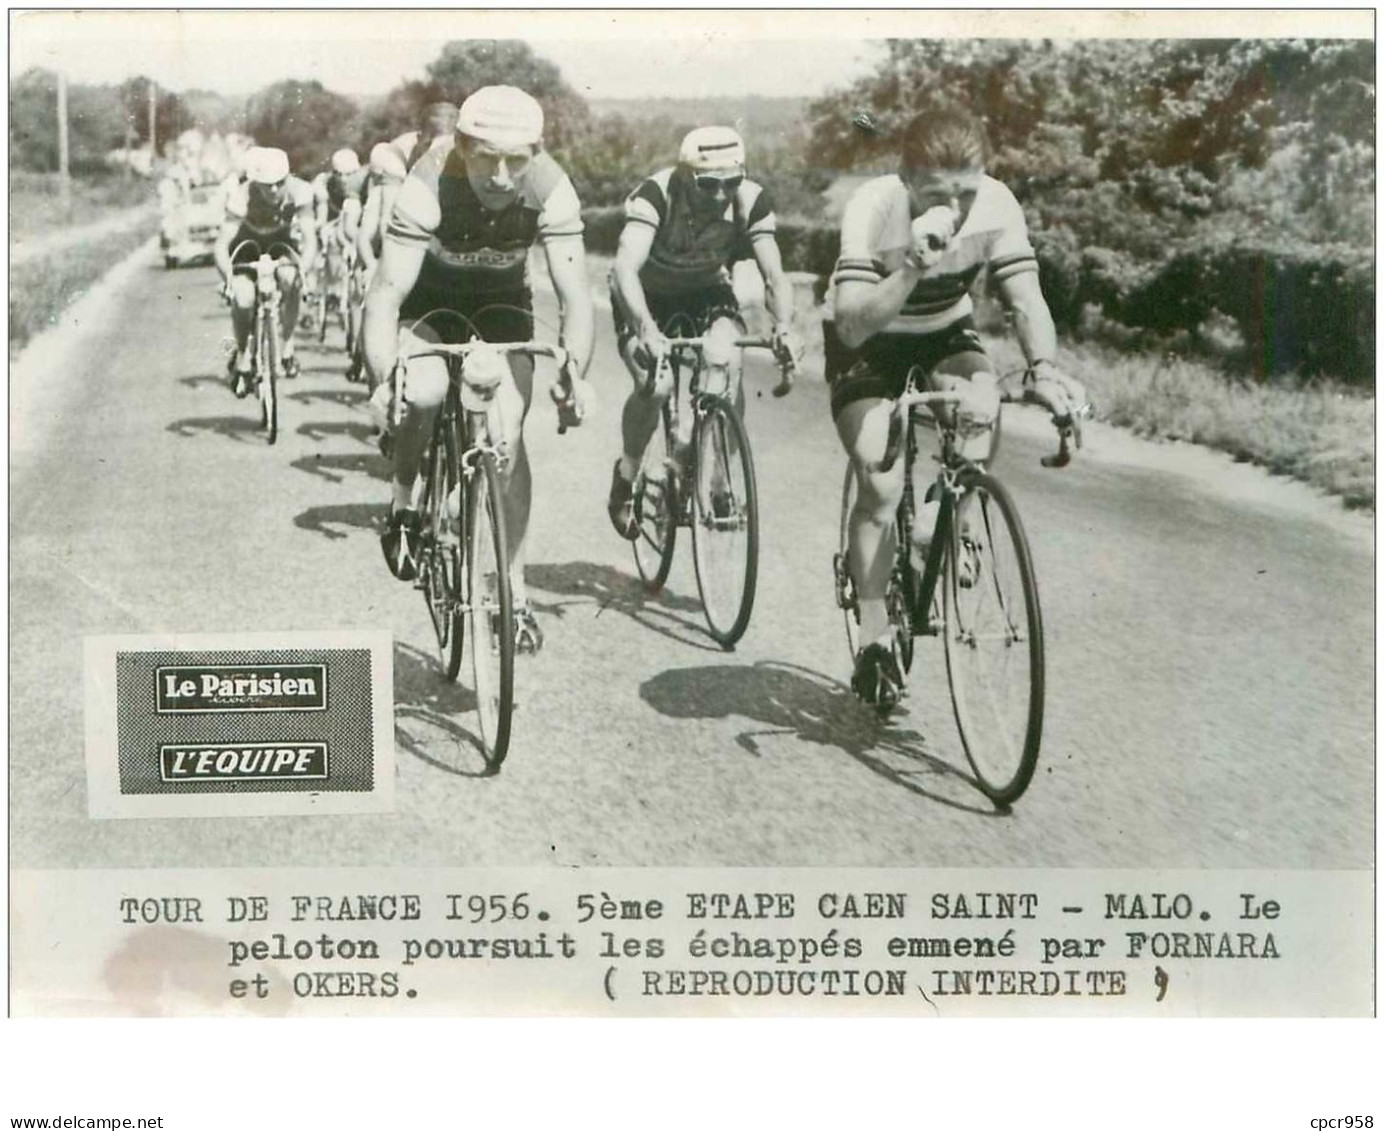 PHOTO DE PRESSE ORIGINALE TOUR DE FRANCE 1956.20X15.5eme ETAPE CAEN ST MALO.LE PELOTON ...FORNARA ET OKERS.n°18662 - Wielrennen